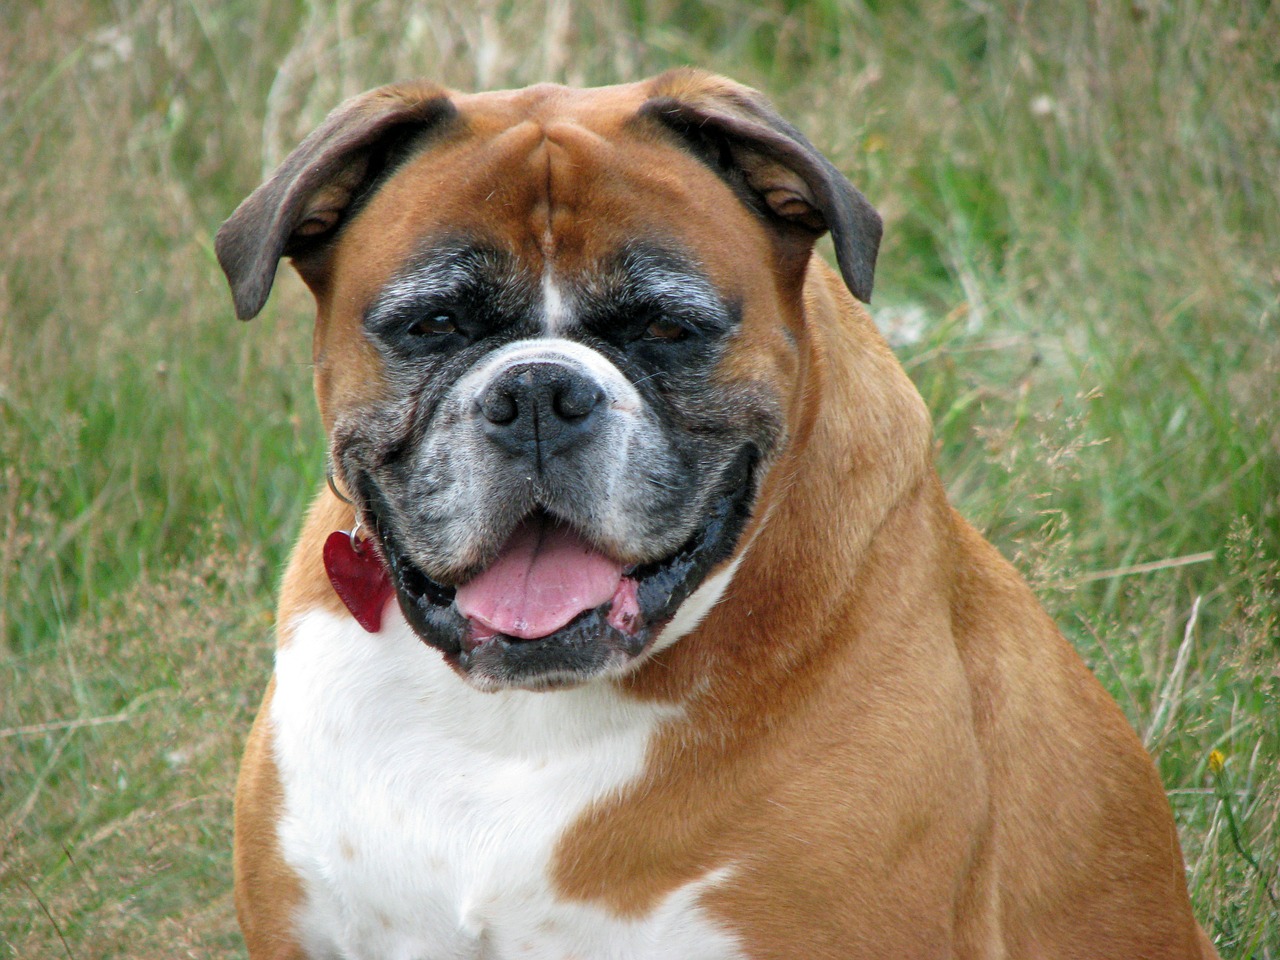 Image - boxer dog pet animal breed canine